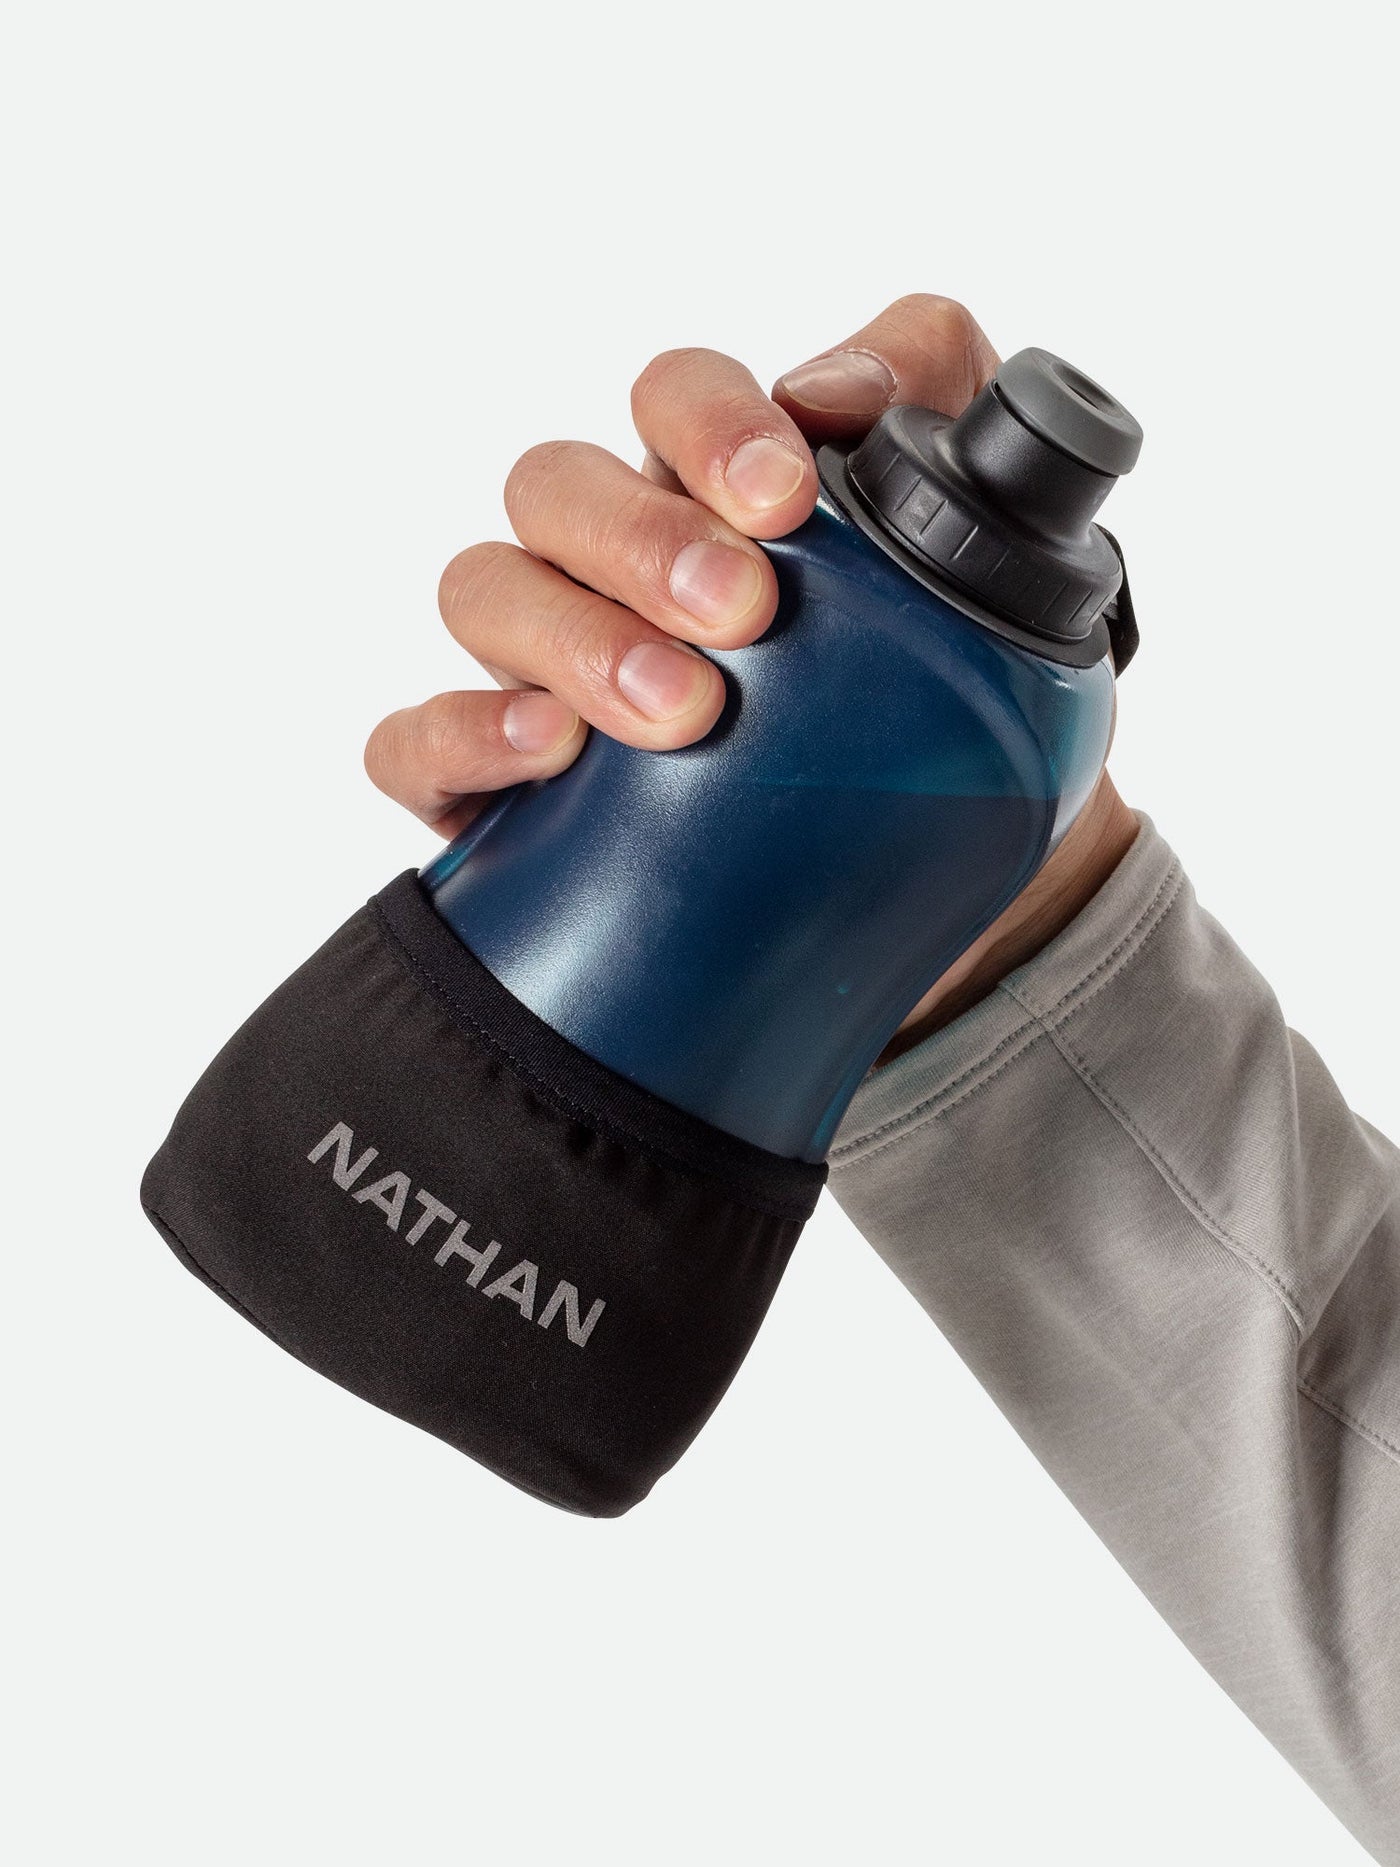 Nathan SpeedShot Plus - 12oz Handheld Flask Review - RunBryanRun